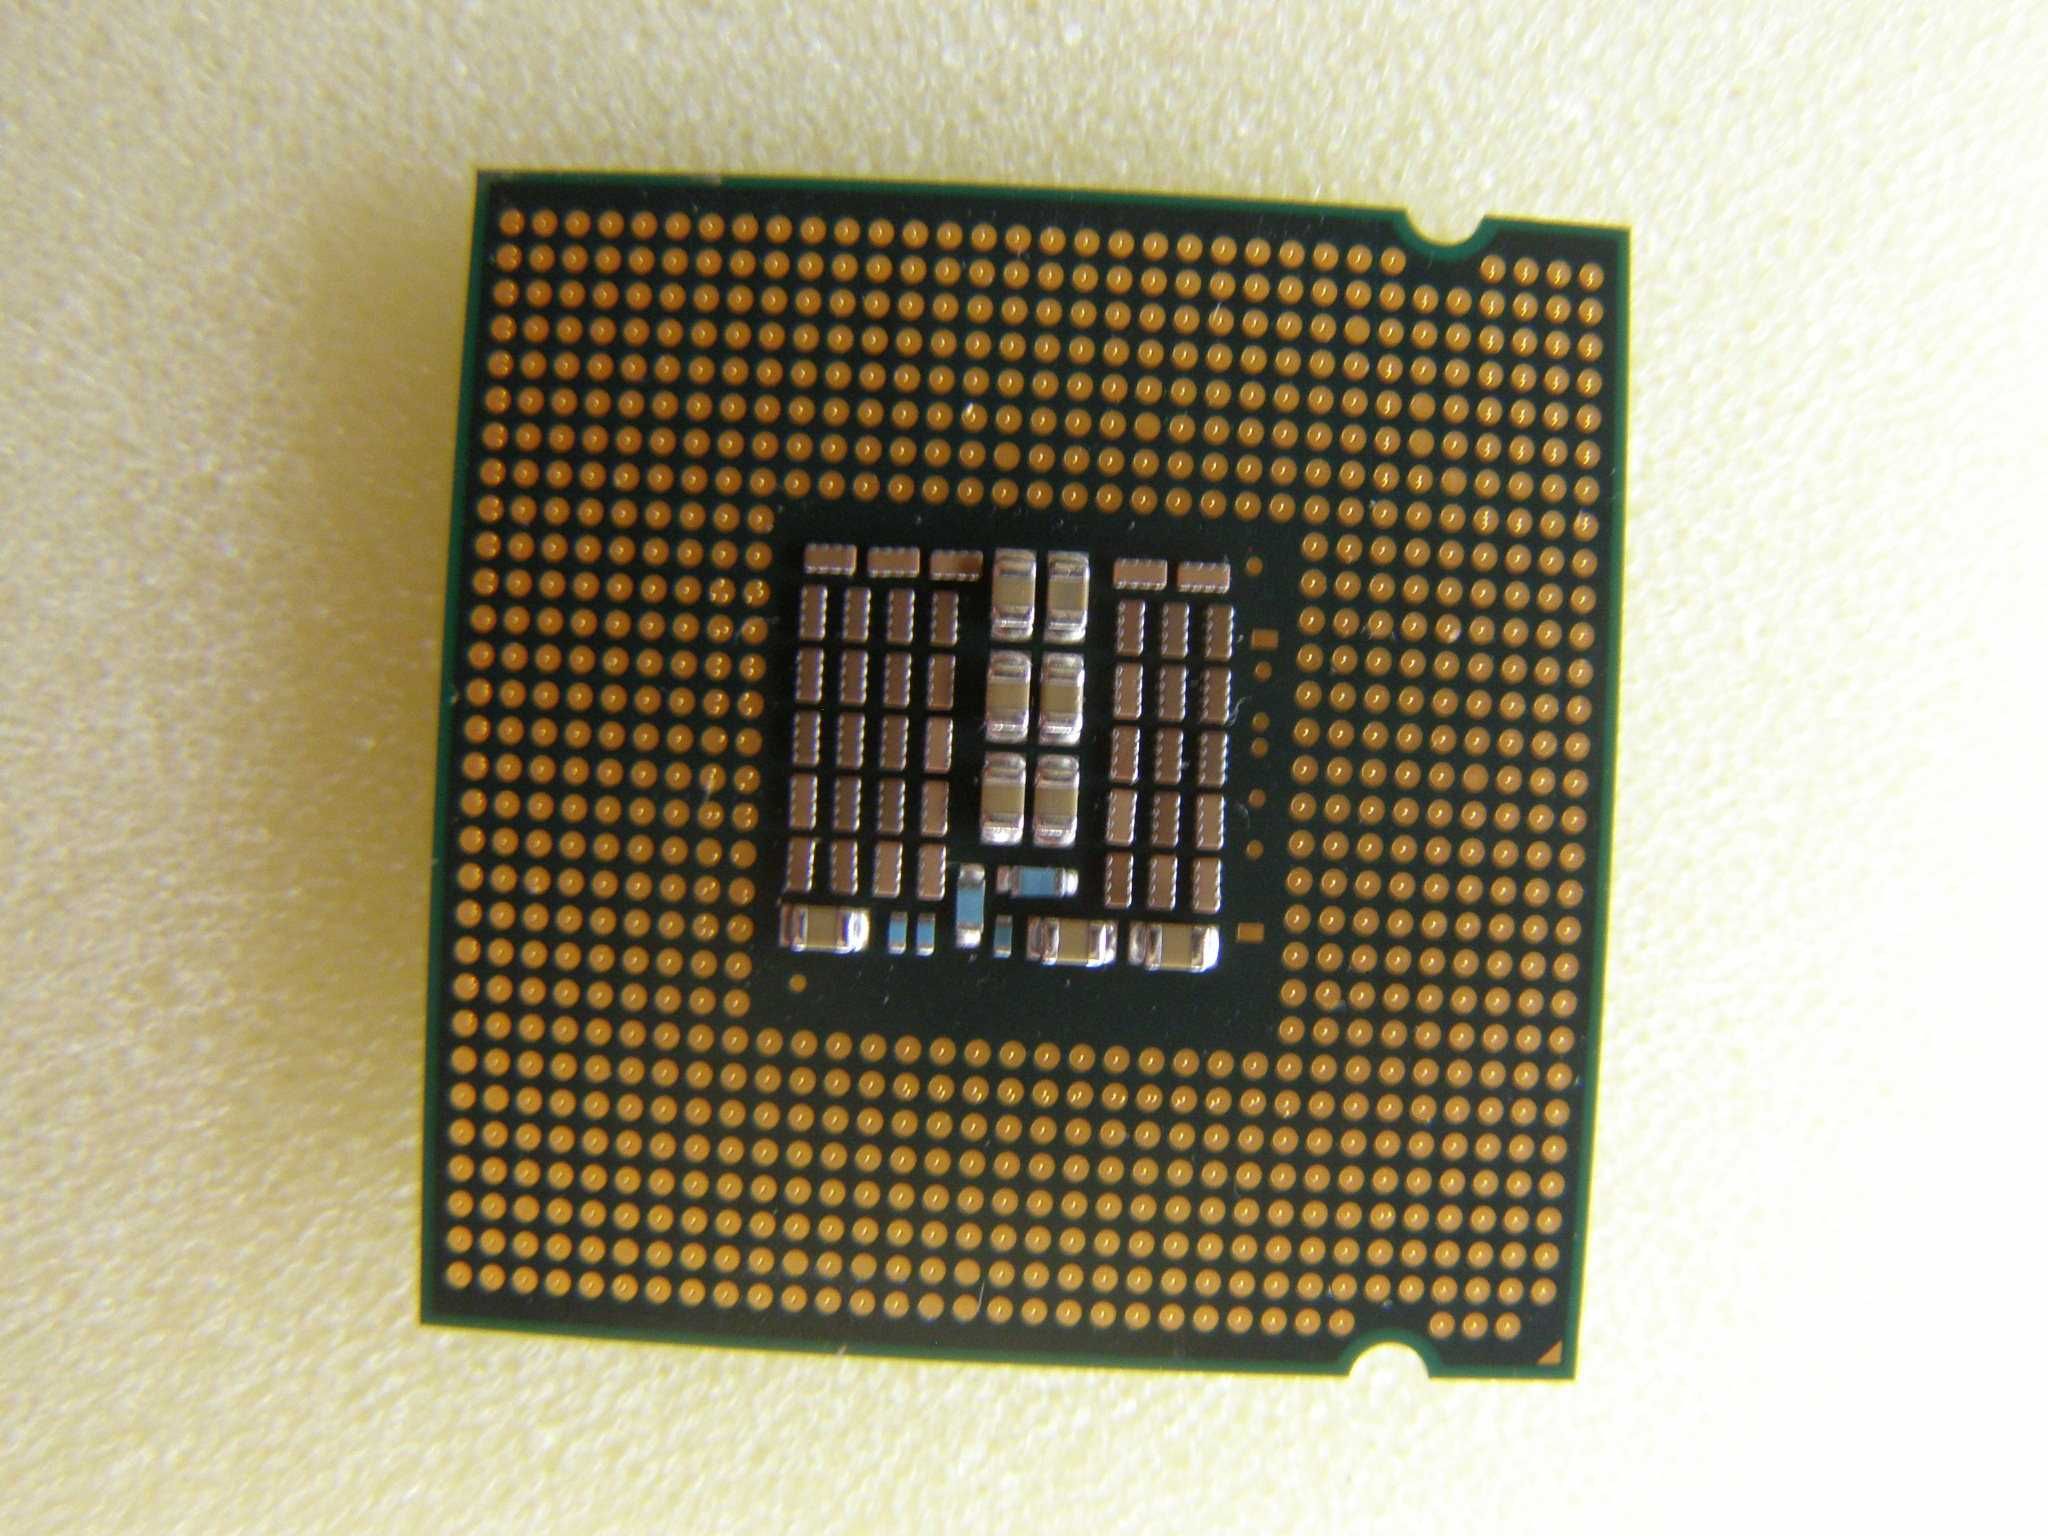 CPU Intel Core 2 Quad SLAWQ 2.83Ghz/12M/1333mhz
SKT 775